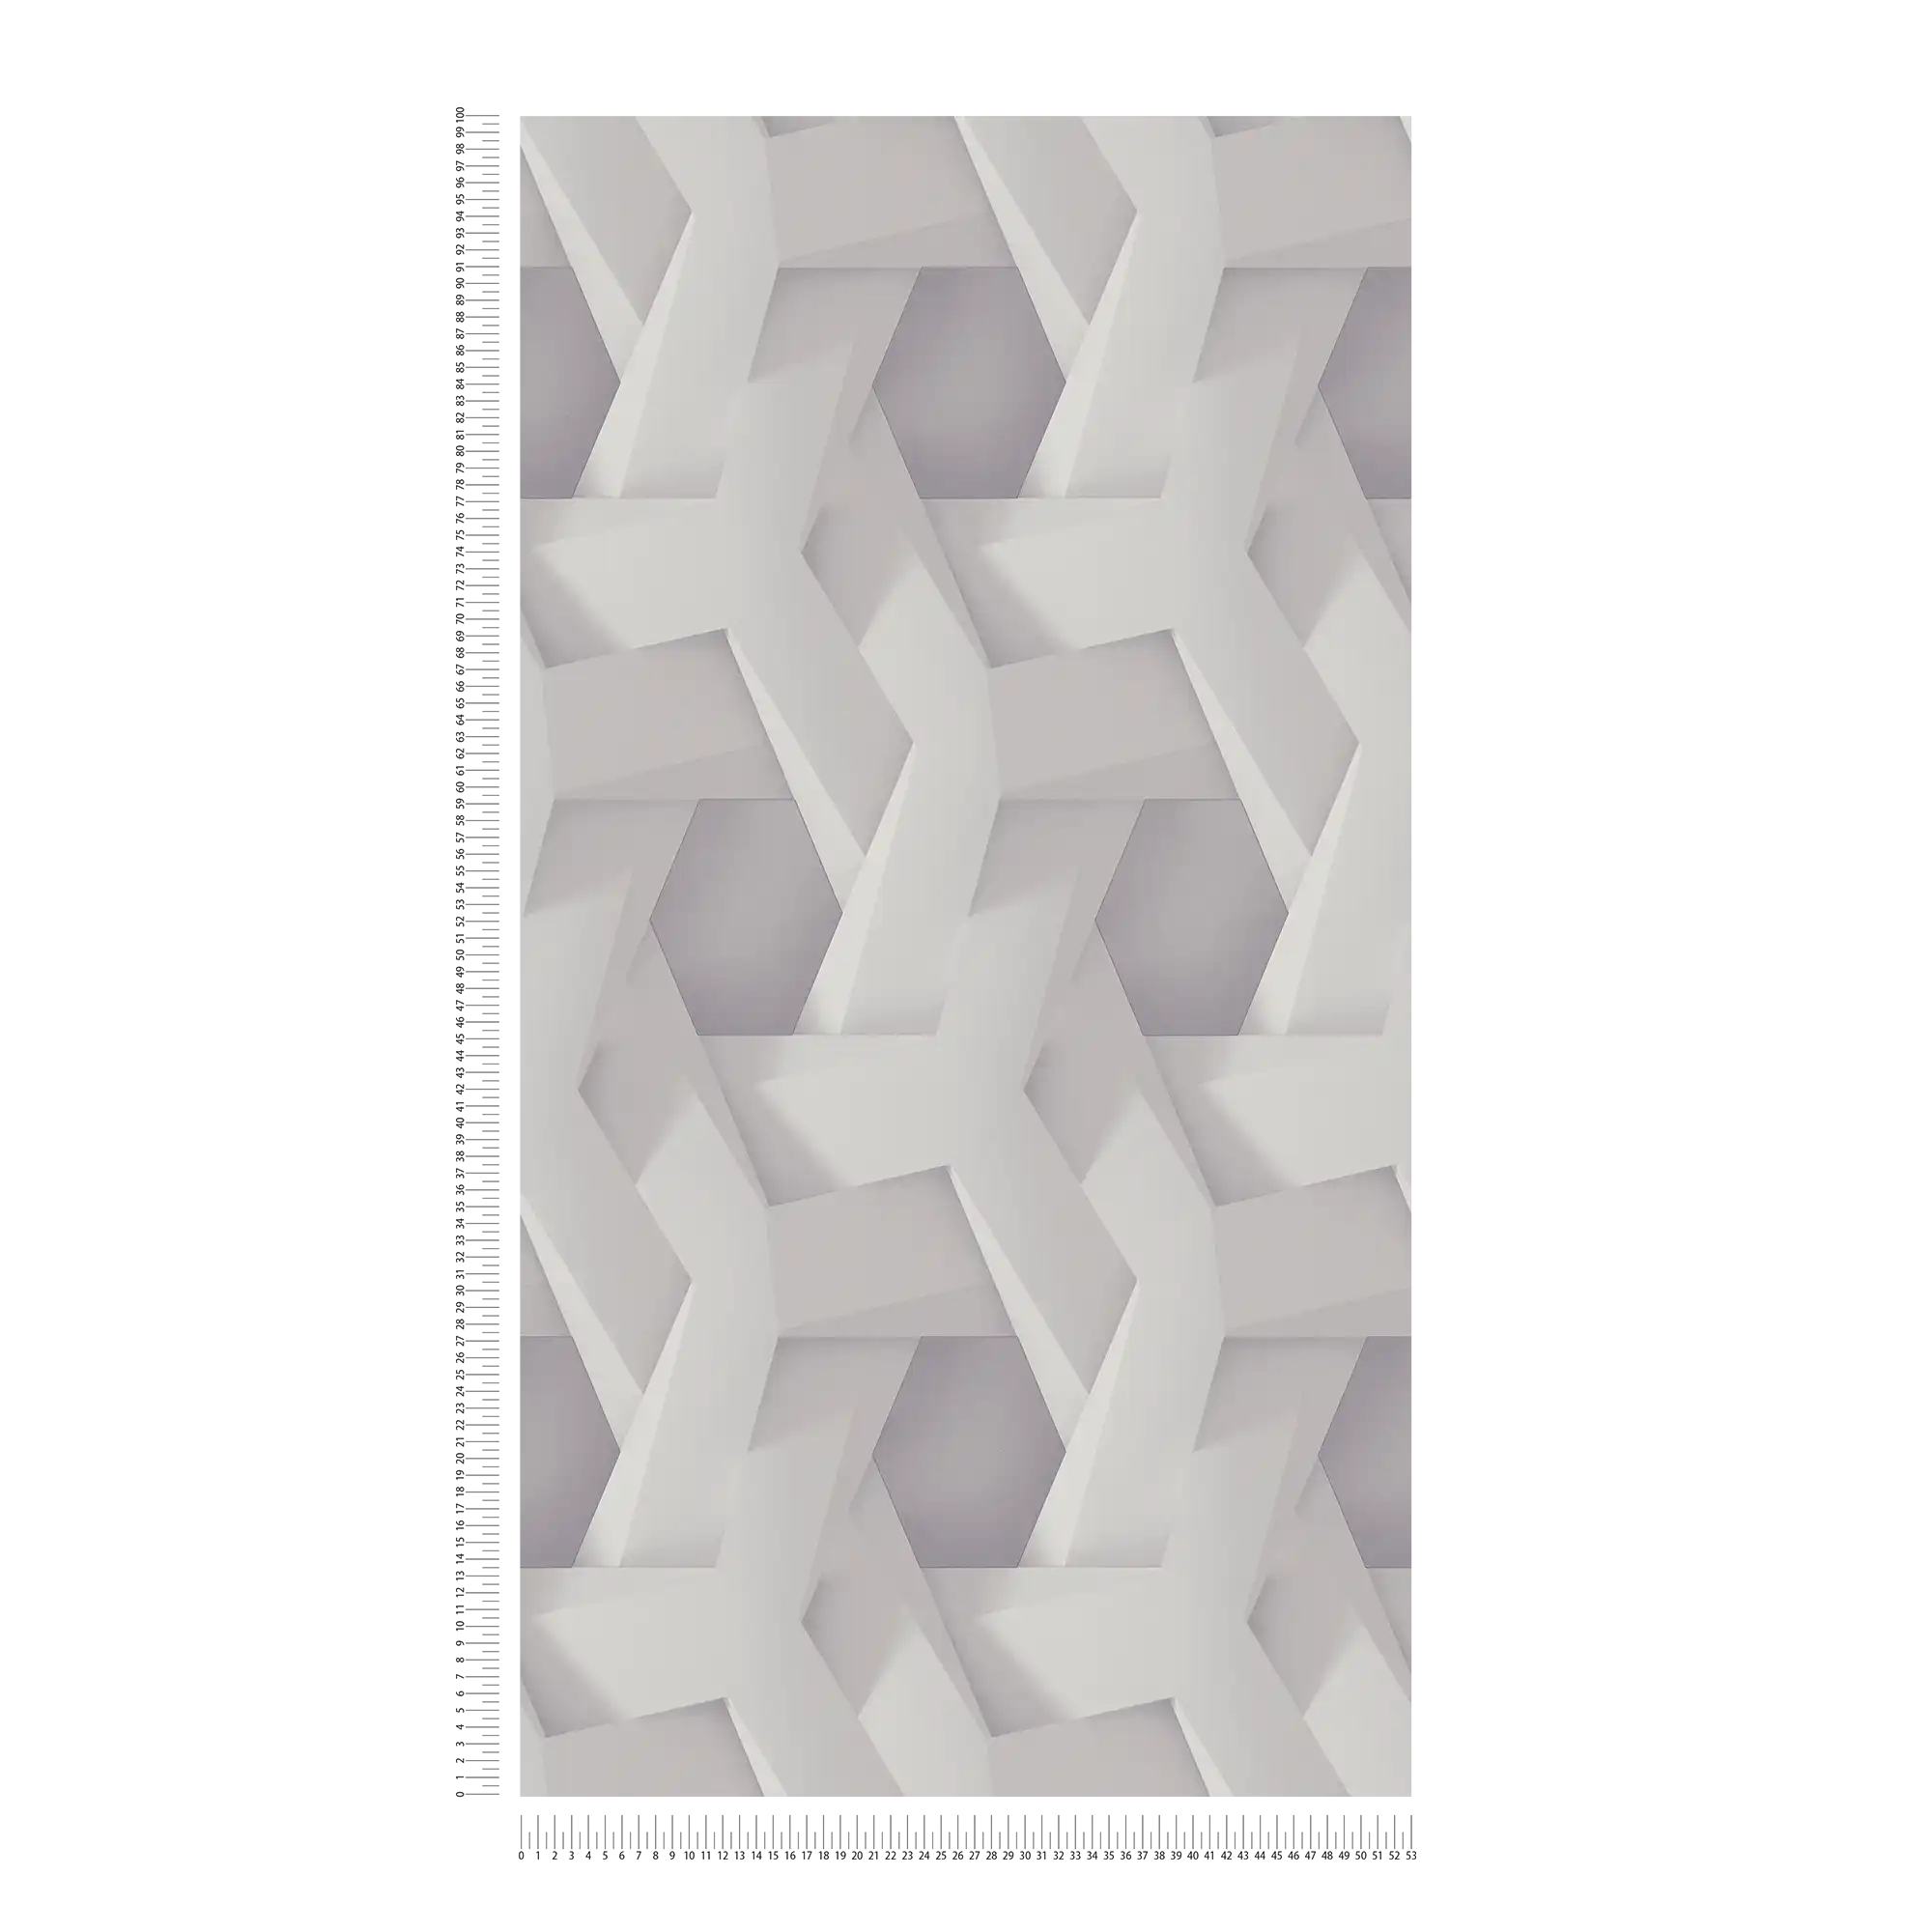             3D-behang lichtgrijs grafisch patroon met betonlook
        